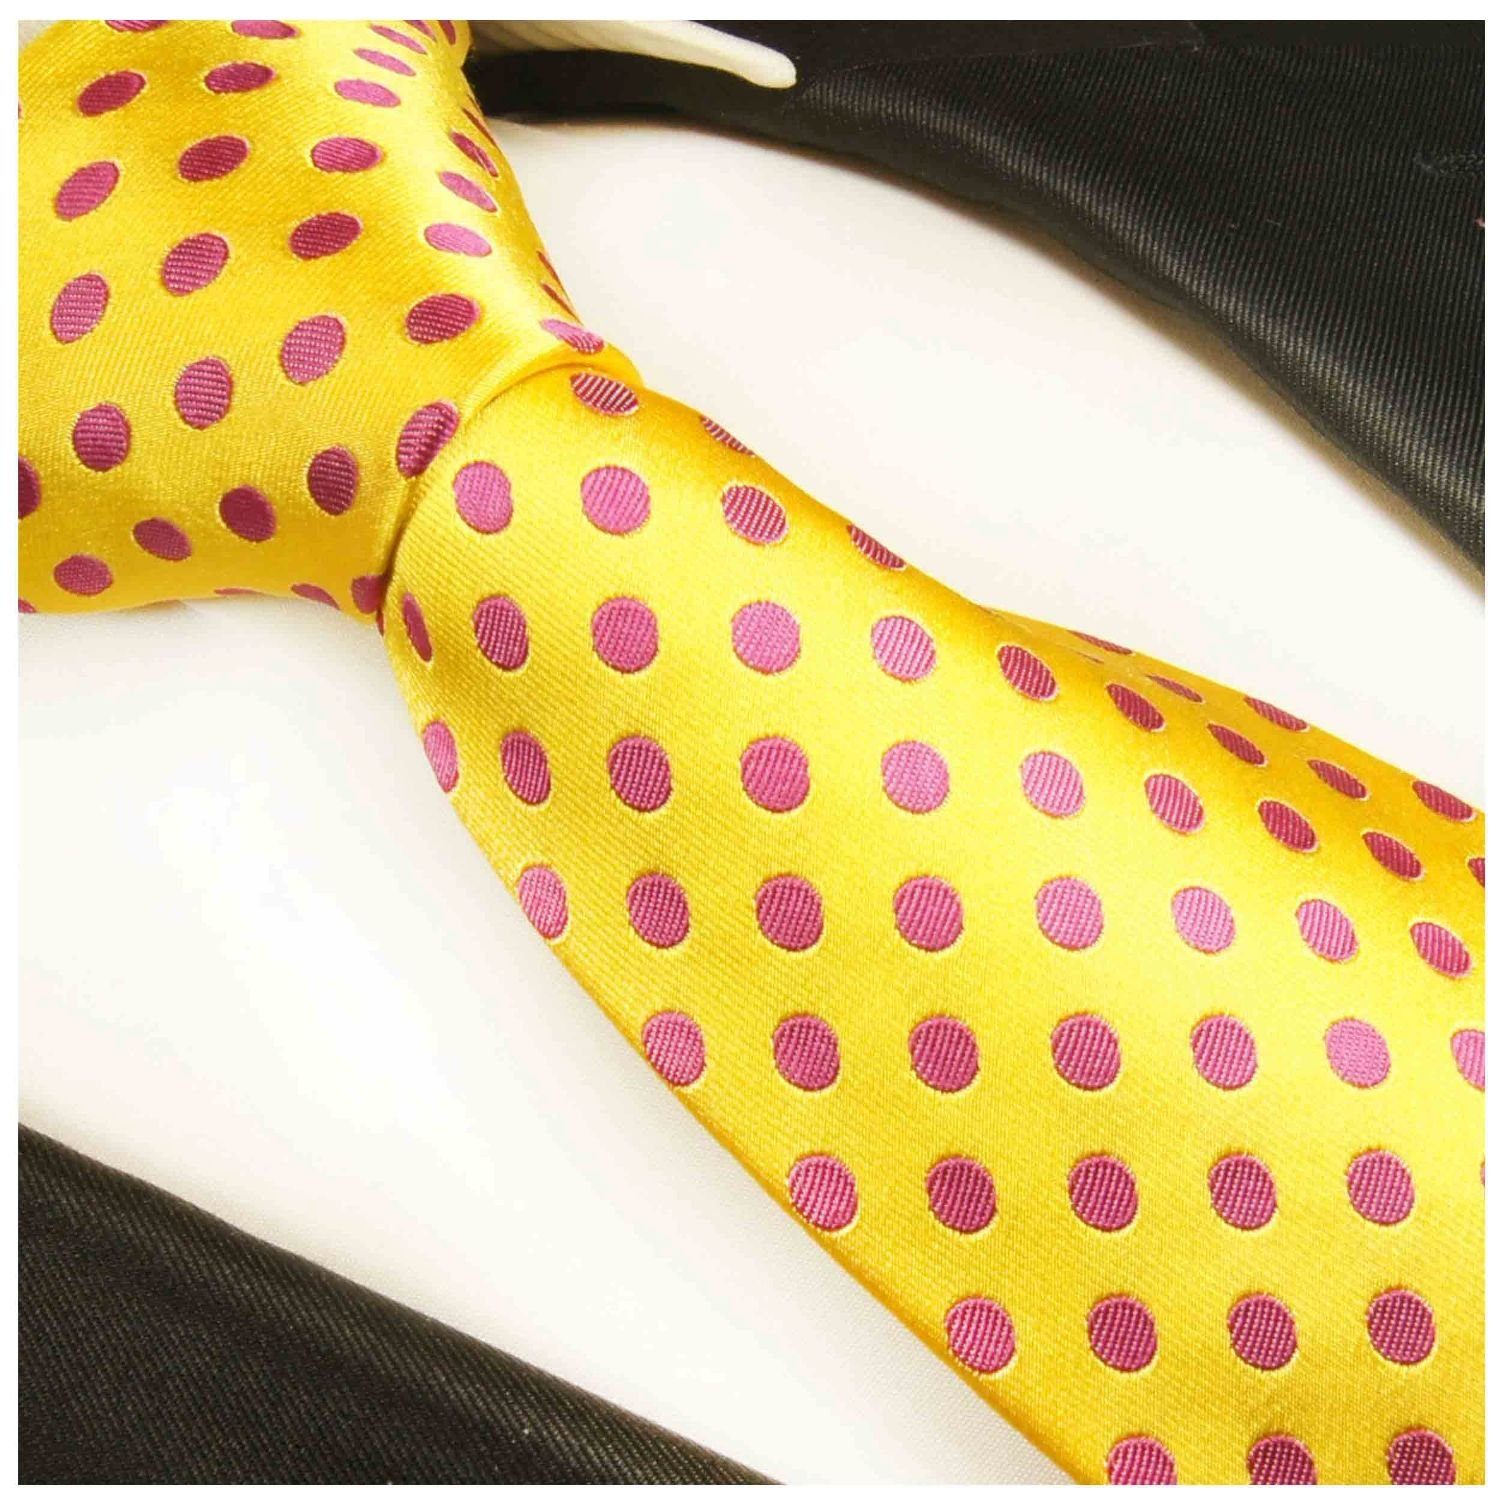 Malone gepunktet 100% Schmal 2003 Herren Schlips pink gelb Paul modern Designer (6cm), Seide Seidenkrawatte Krawatte